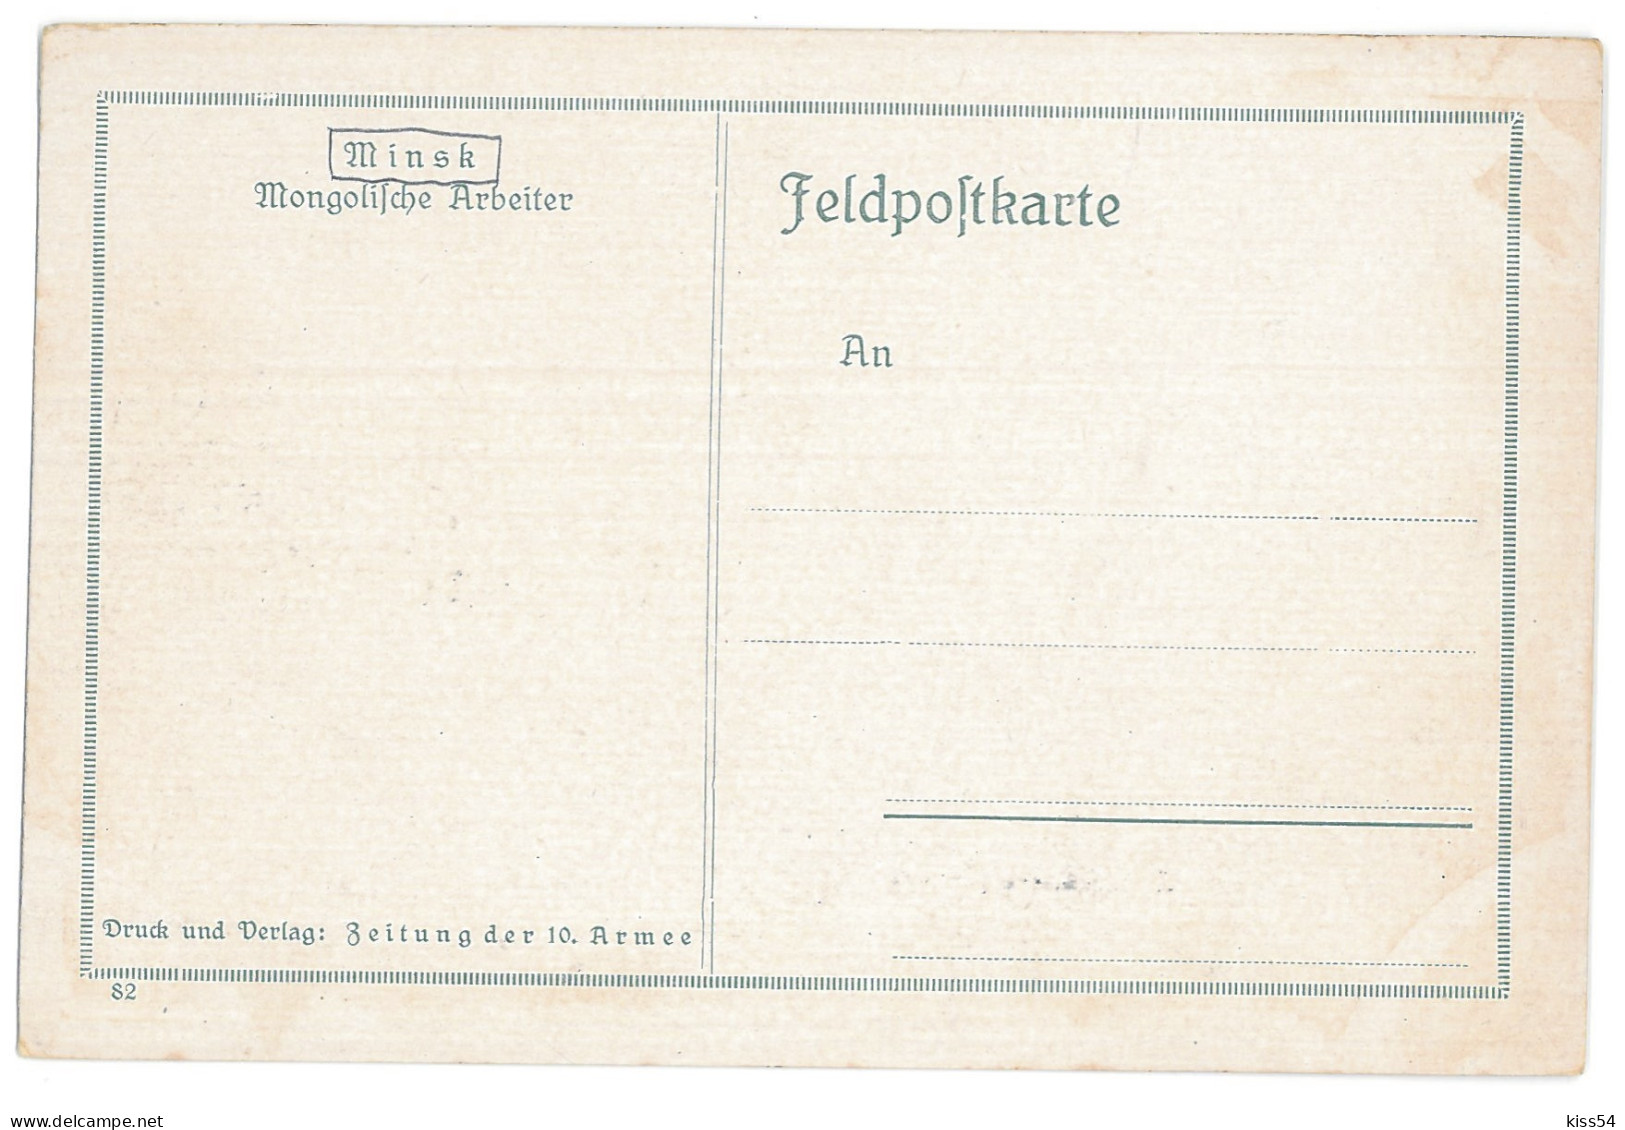 BL 26 - 13860 MINSK, Belarus, Mongolian Workers - Old Postcard - Unused - Weißrussland